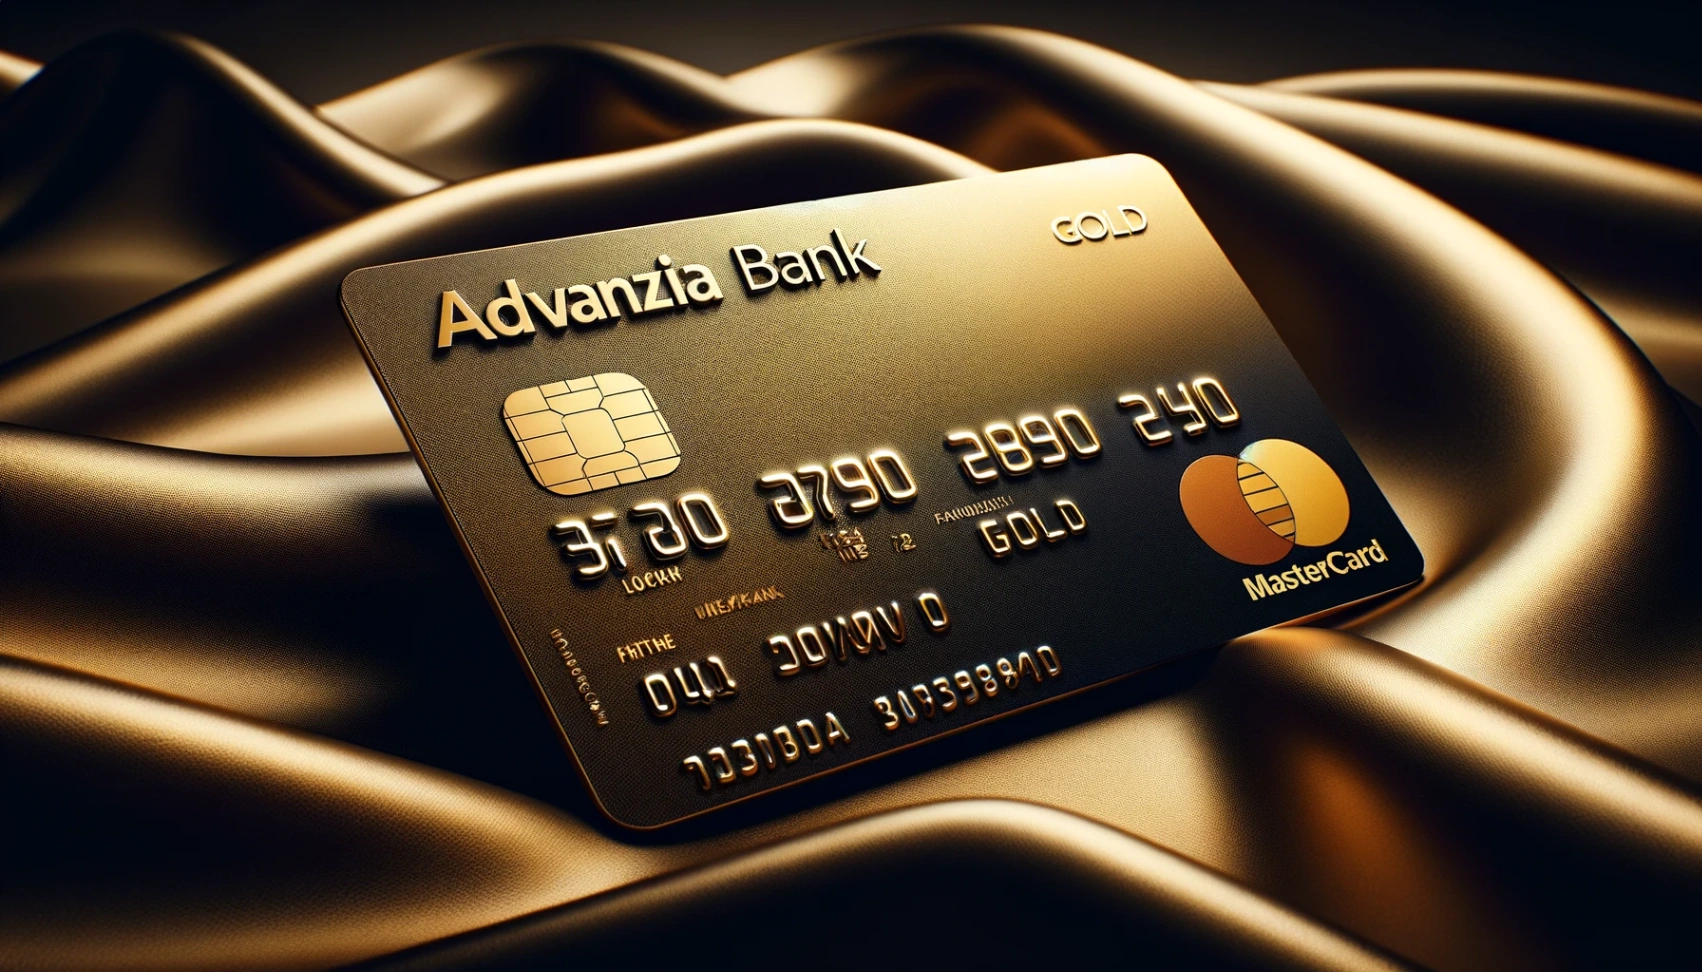 Advanzia Bank Mastercard Gold: Your Comprehensive Application Tutorial